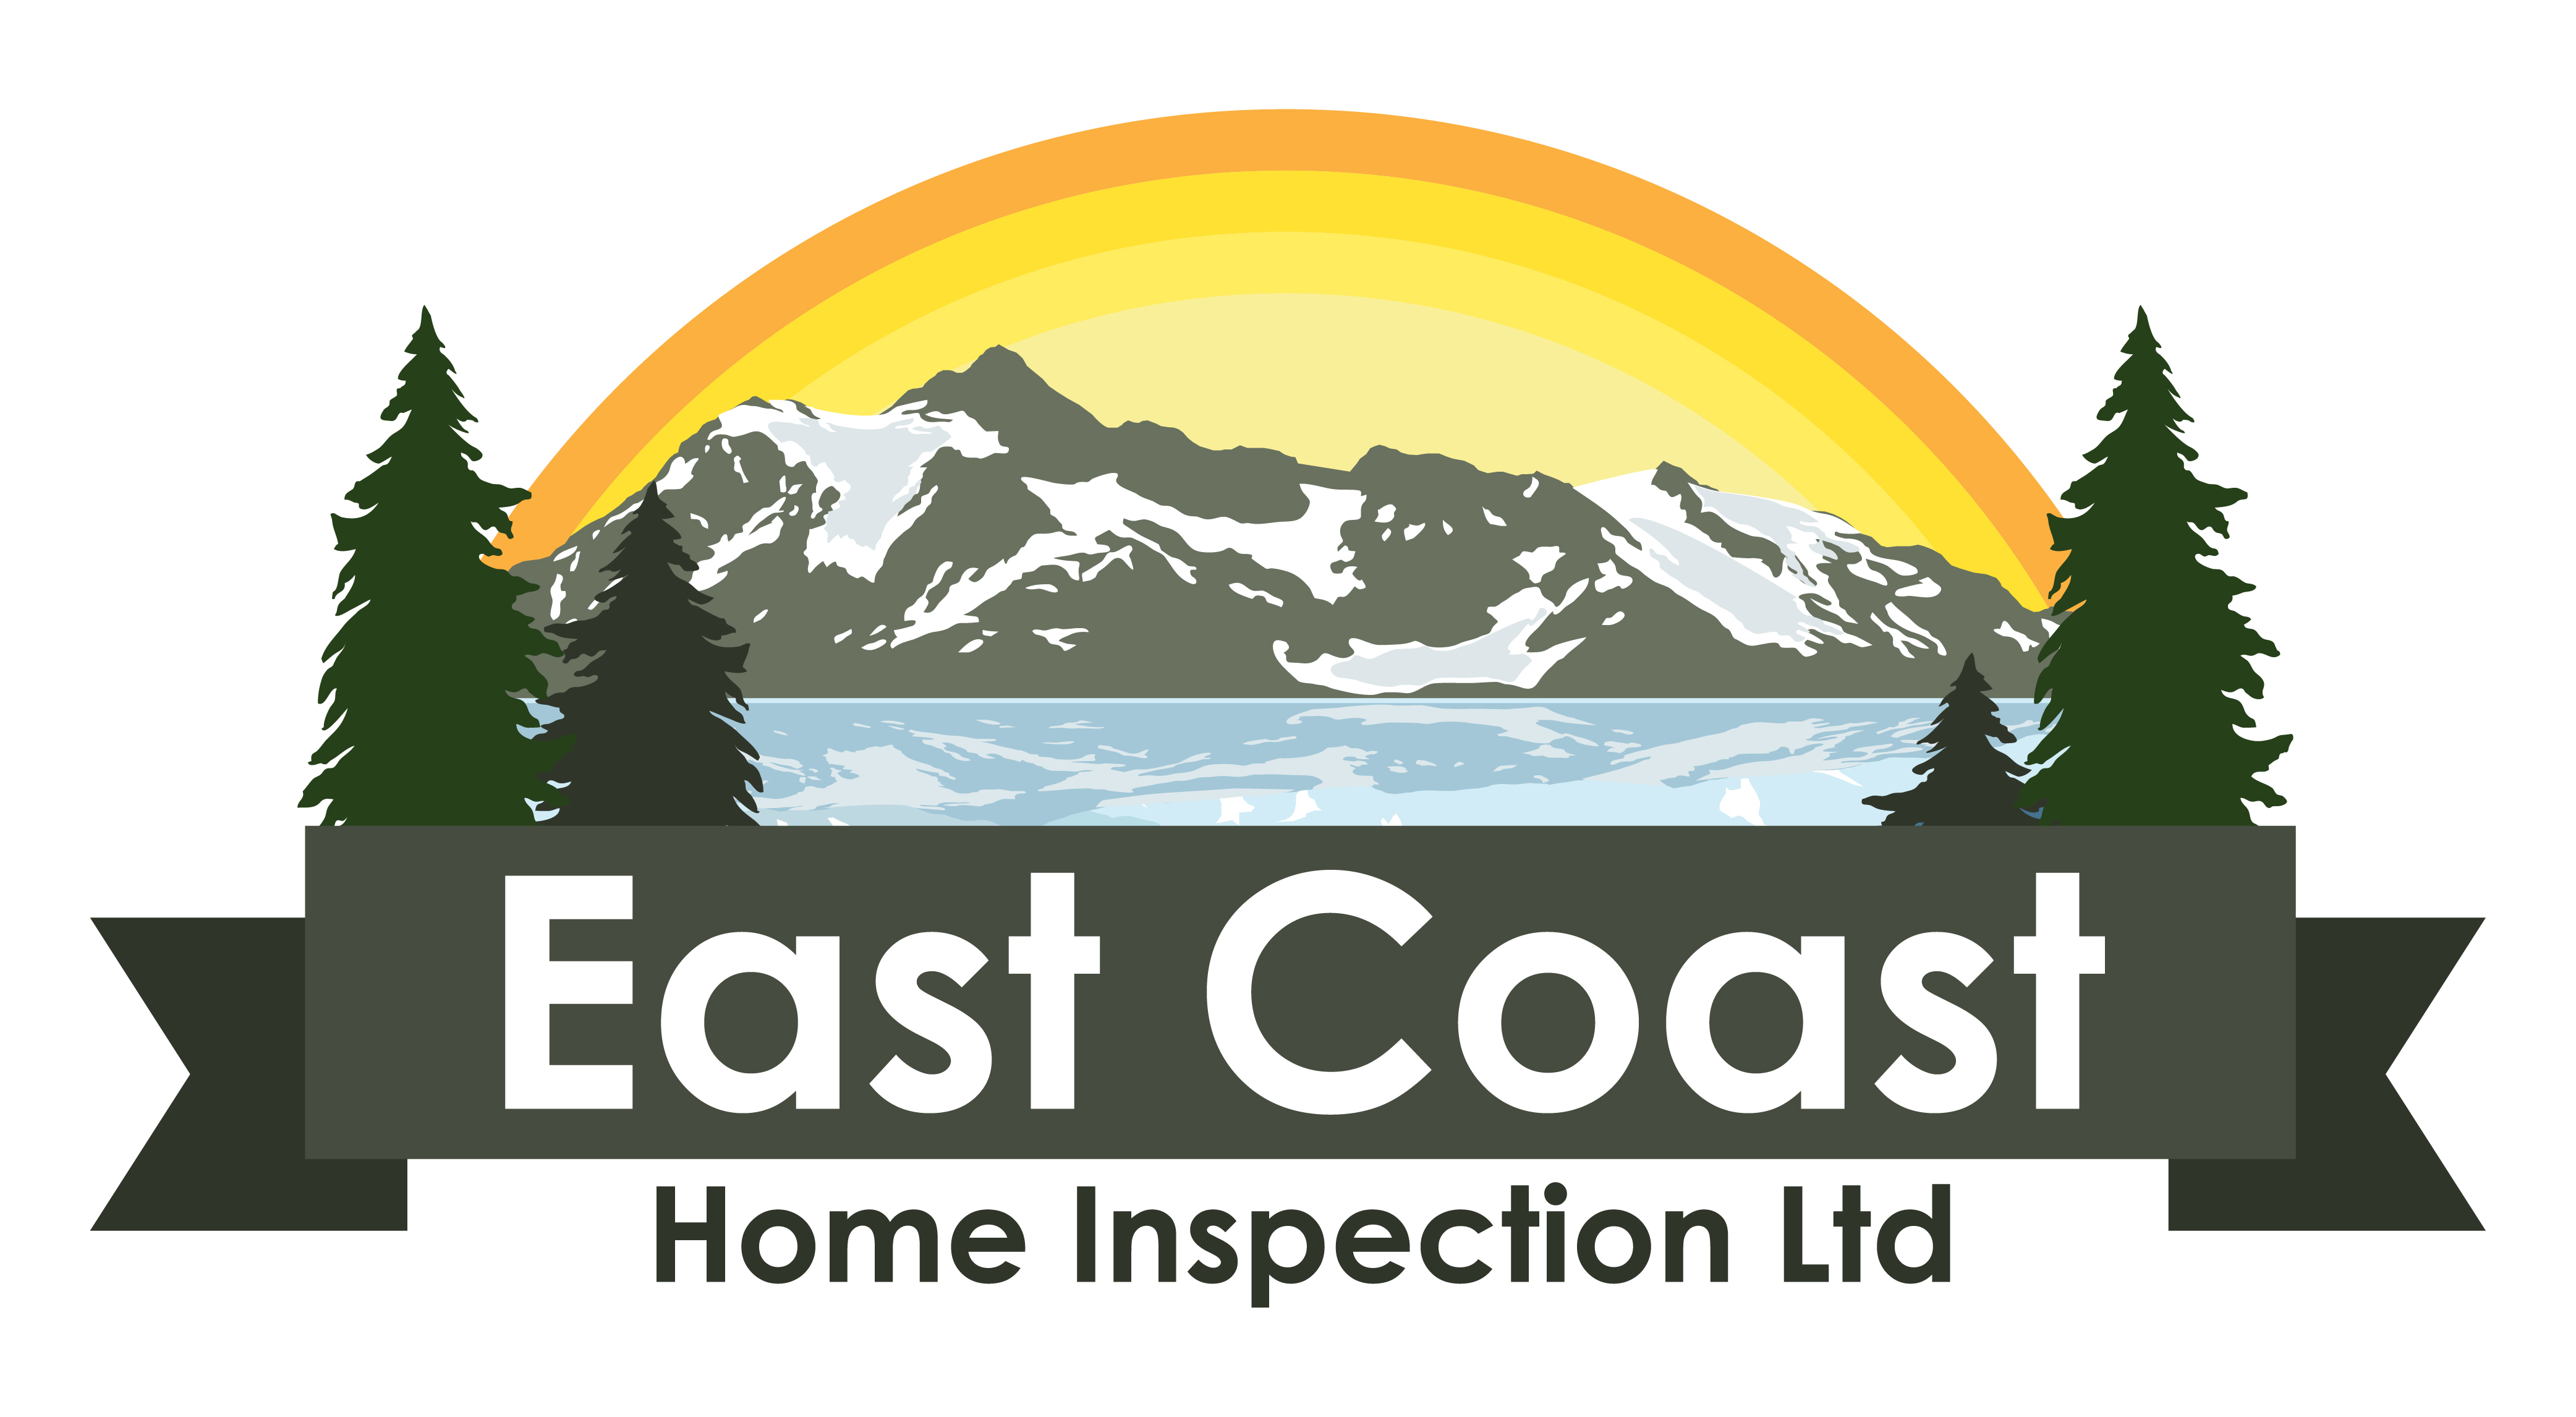 East Coast Home Inspection